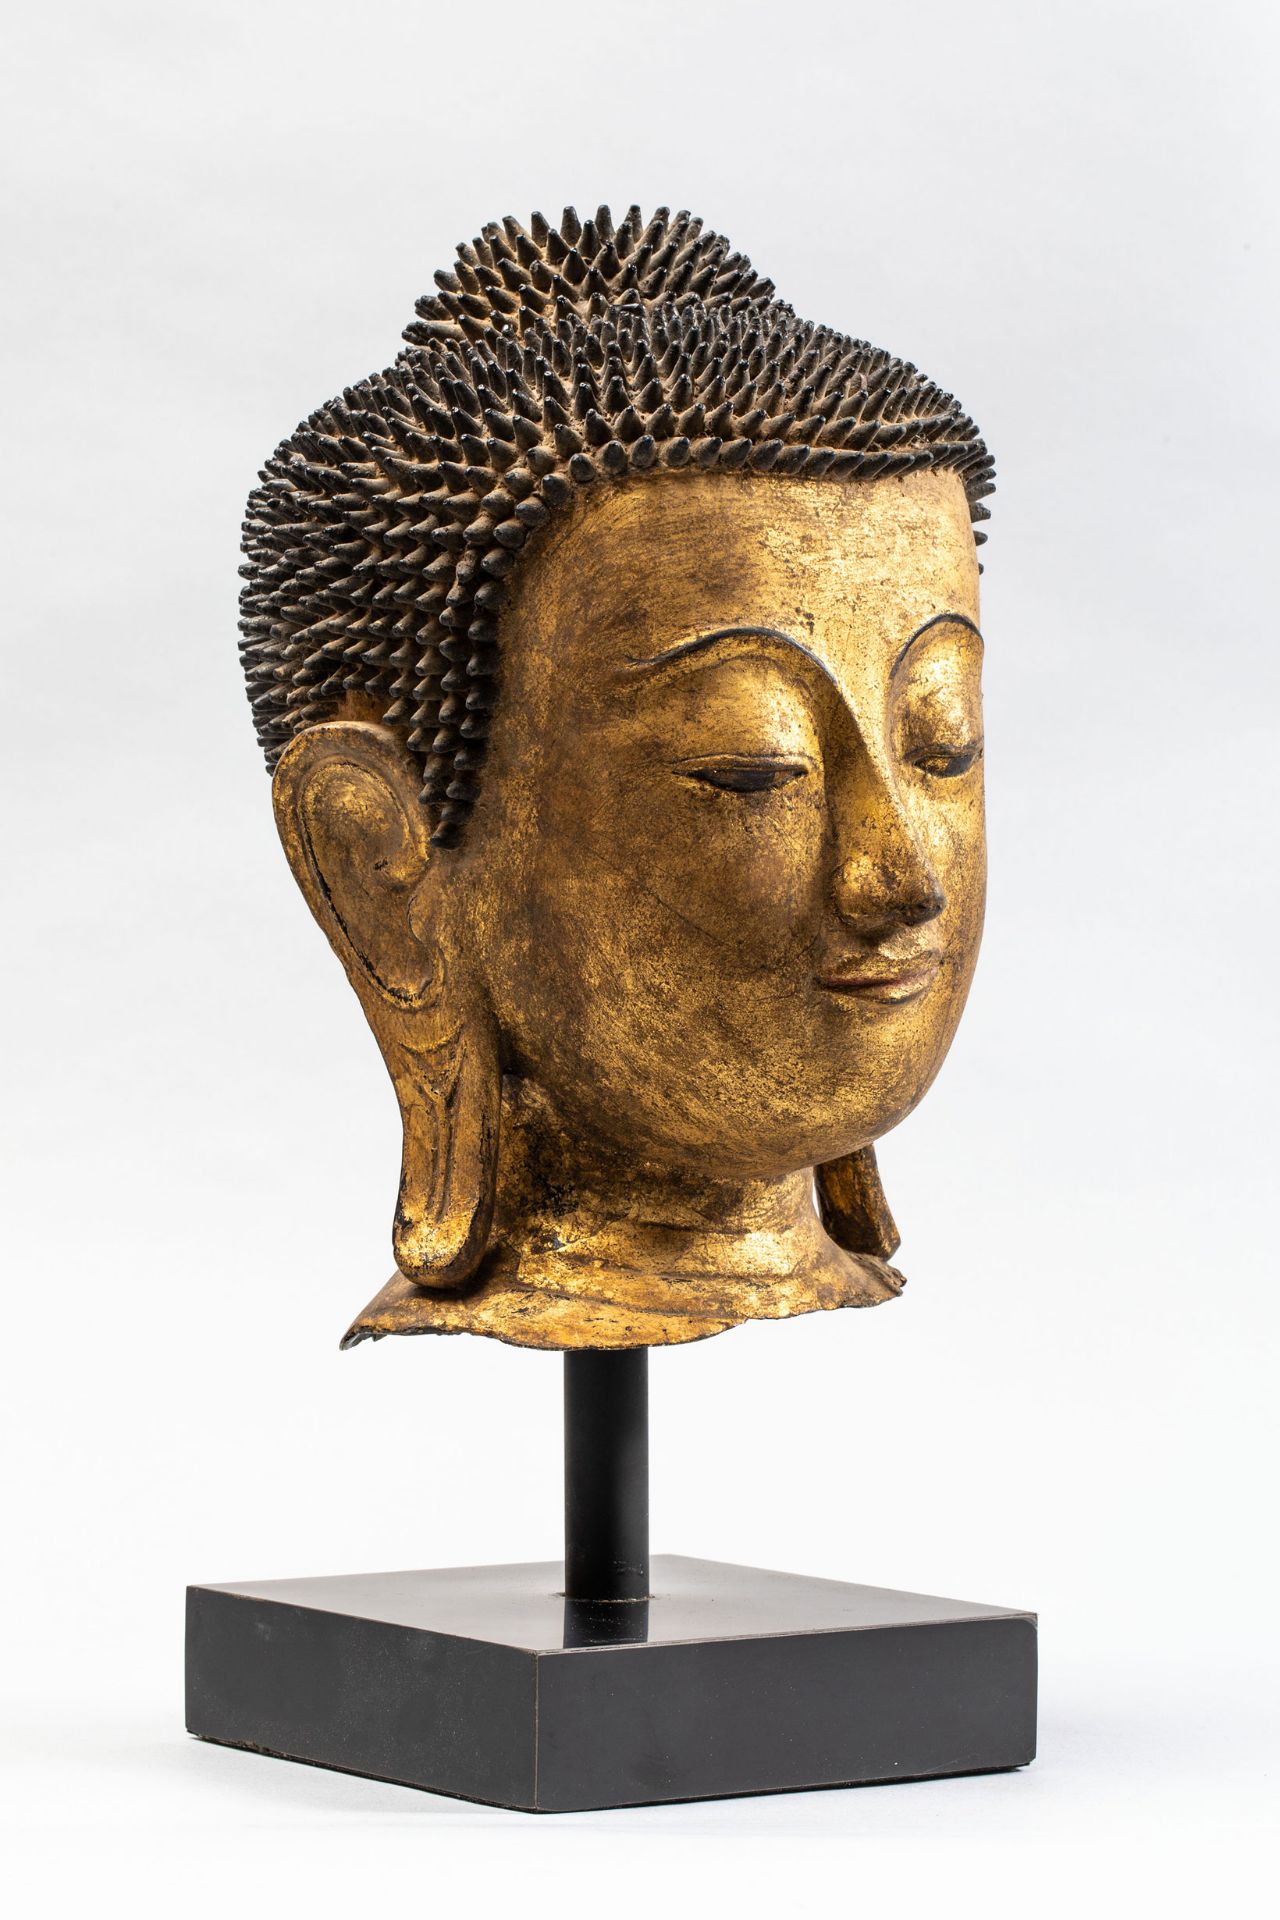 Tête de Buddha coiffée de fines bouclettes hérissées surmontée de la protubérance crânienne ushnisha - Bild 2 aus 4